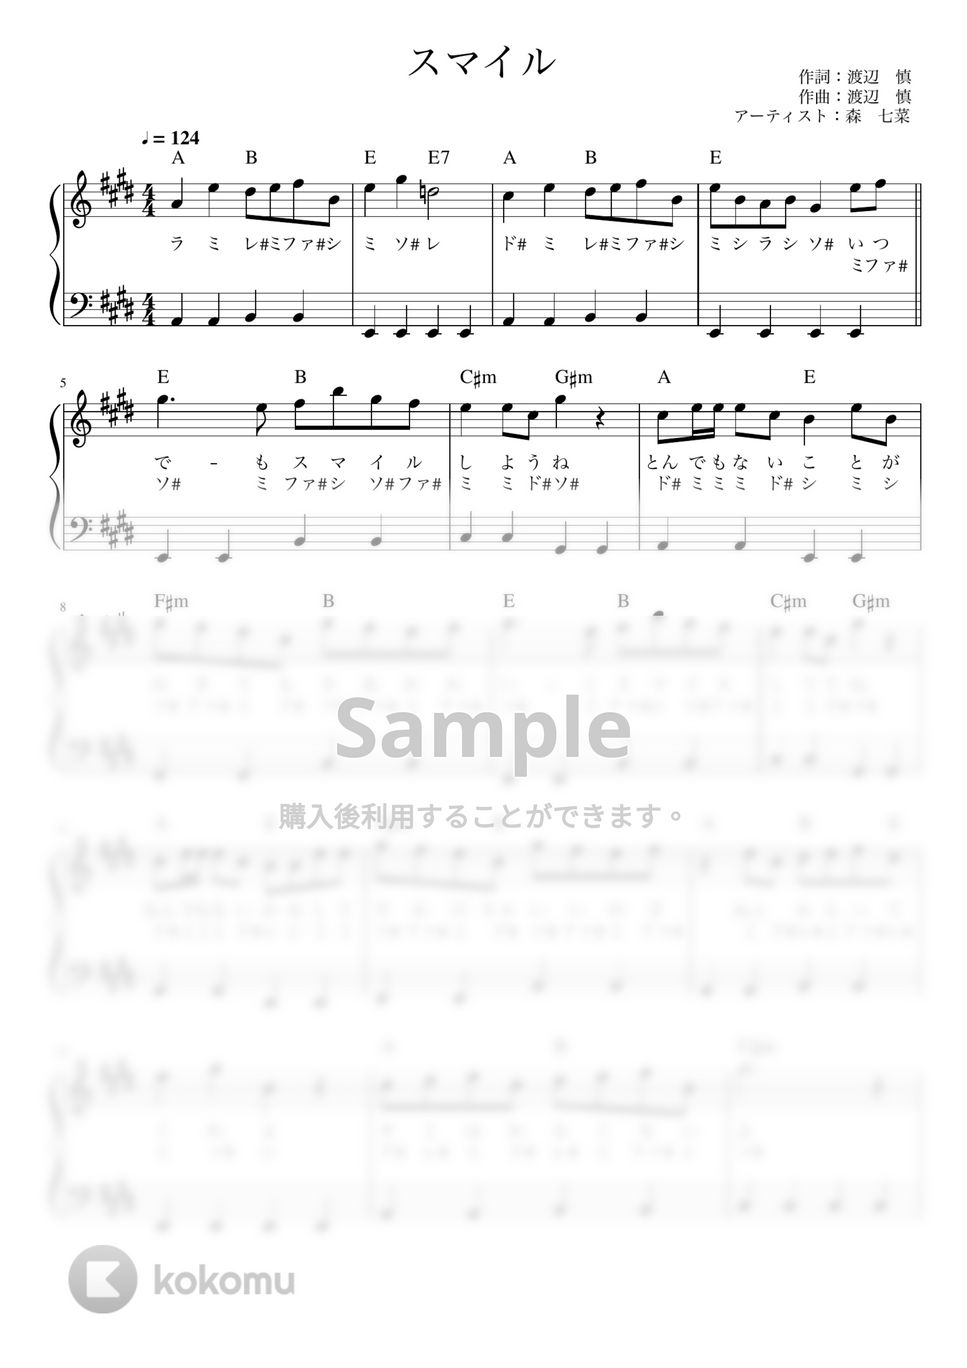 森七菜 - スマイル (かんたん / 歌詞付き / ドレミ付き / 初心者) by piano.tokyo